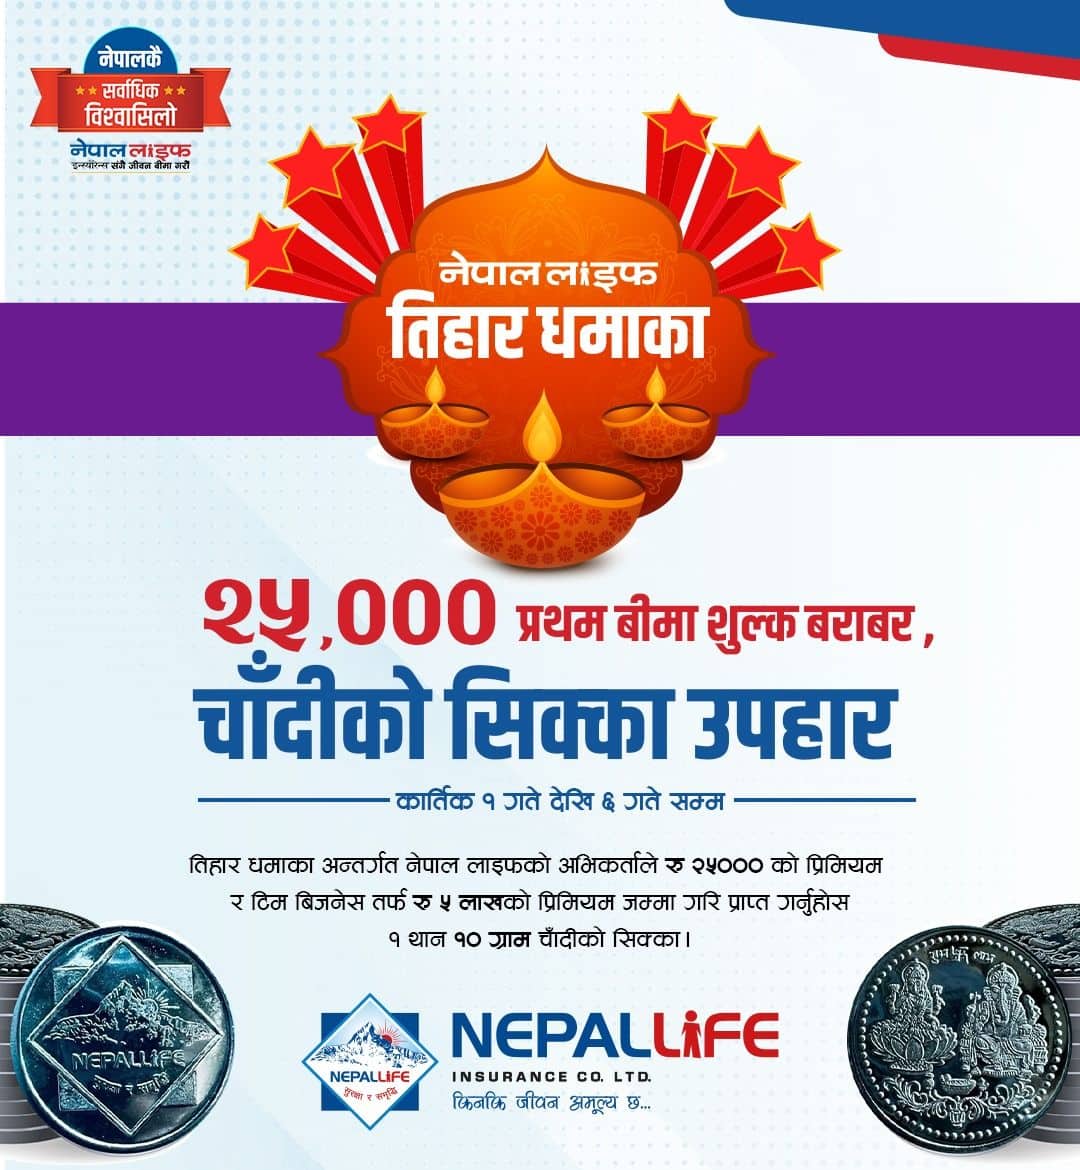 नेपाल लाइफको तिहार धमाका, २५ हजार प्रथम बीमा शुल्क बराबर चाँदीको सिक्का उपहार